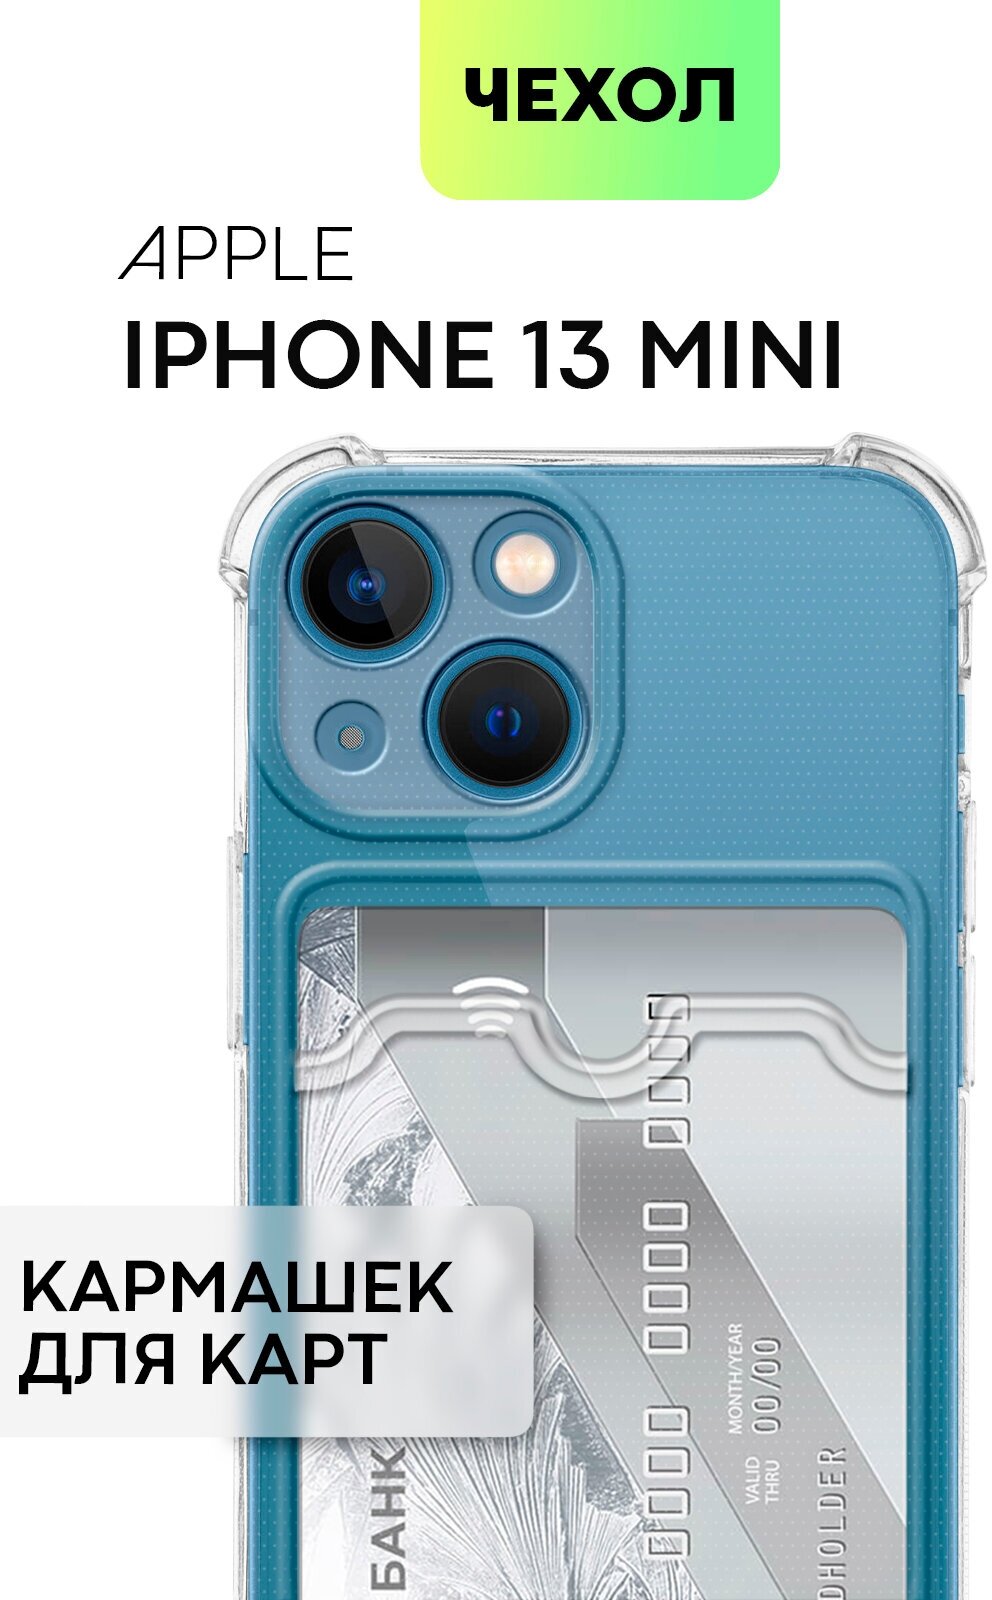 Противоударный чехол с кармашком для Apple iPhone 13 mini (Эпл Айфон 13 мини) силиконовый усиленный, защита камер и карманом для карт, прозрачный